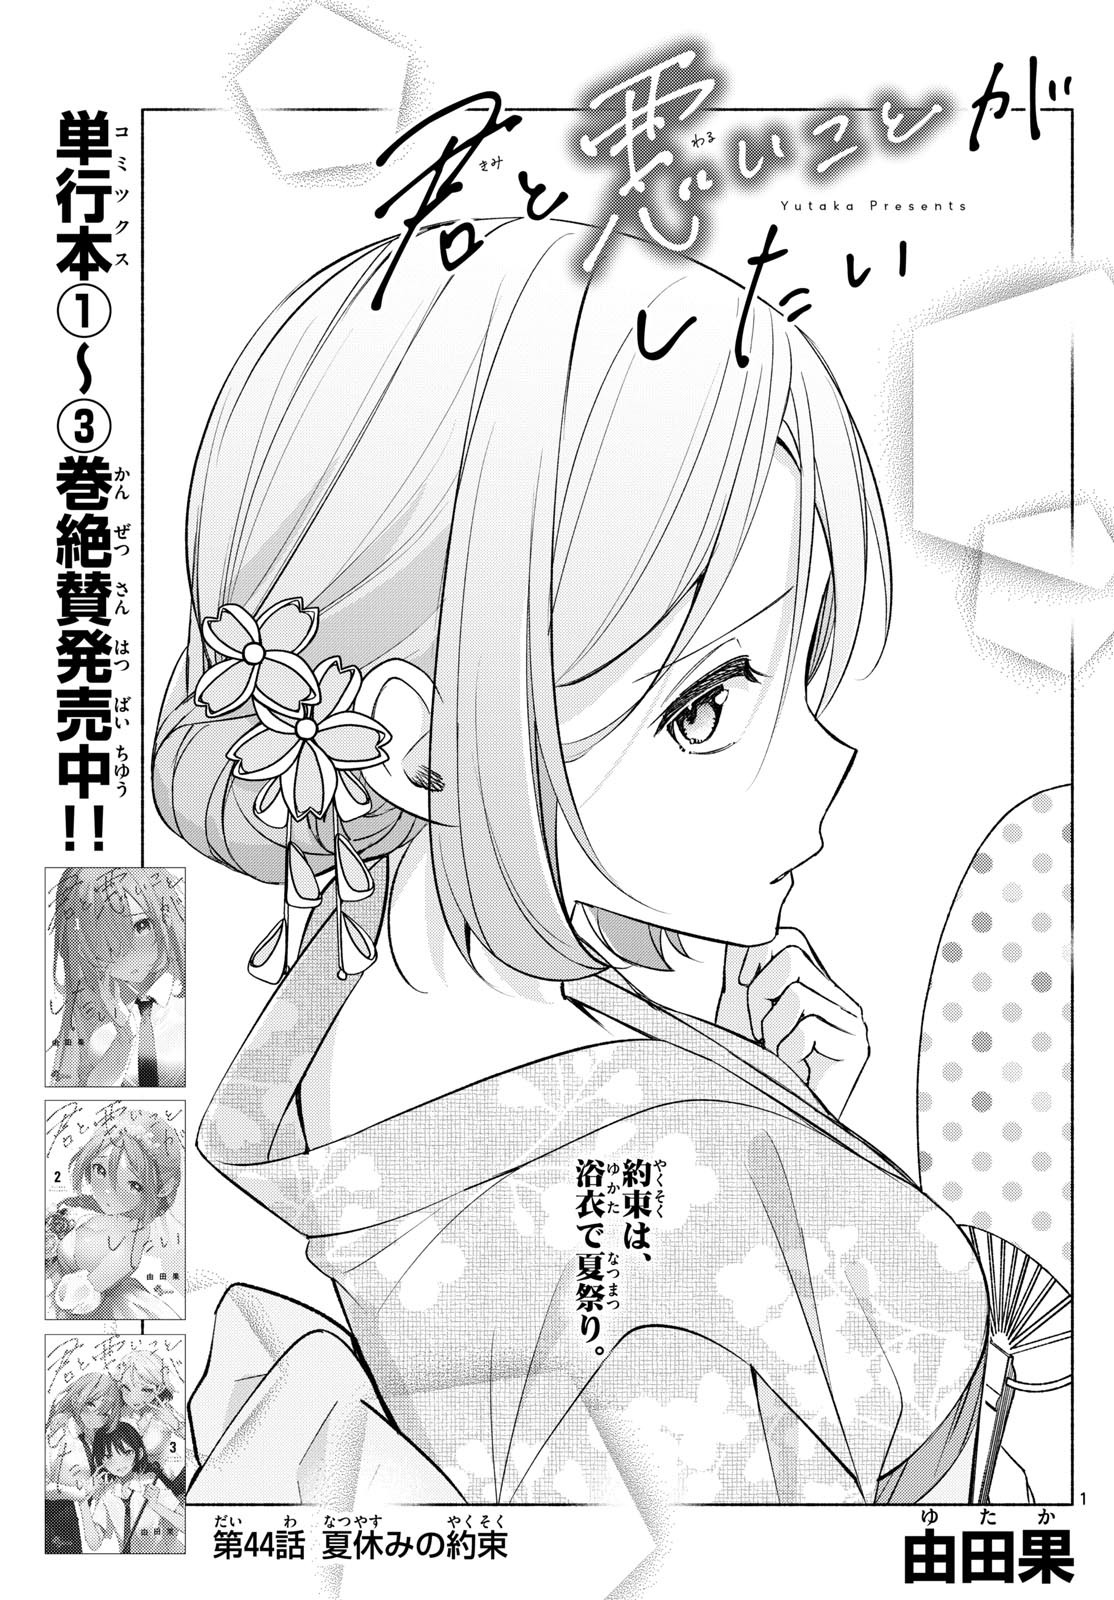 Kimi to Warui Koto ga Shitai - Chapter 044 - Page 1